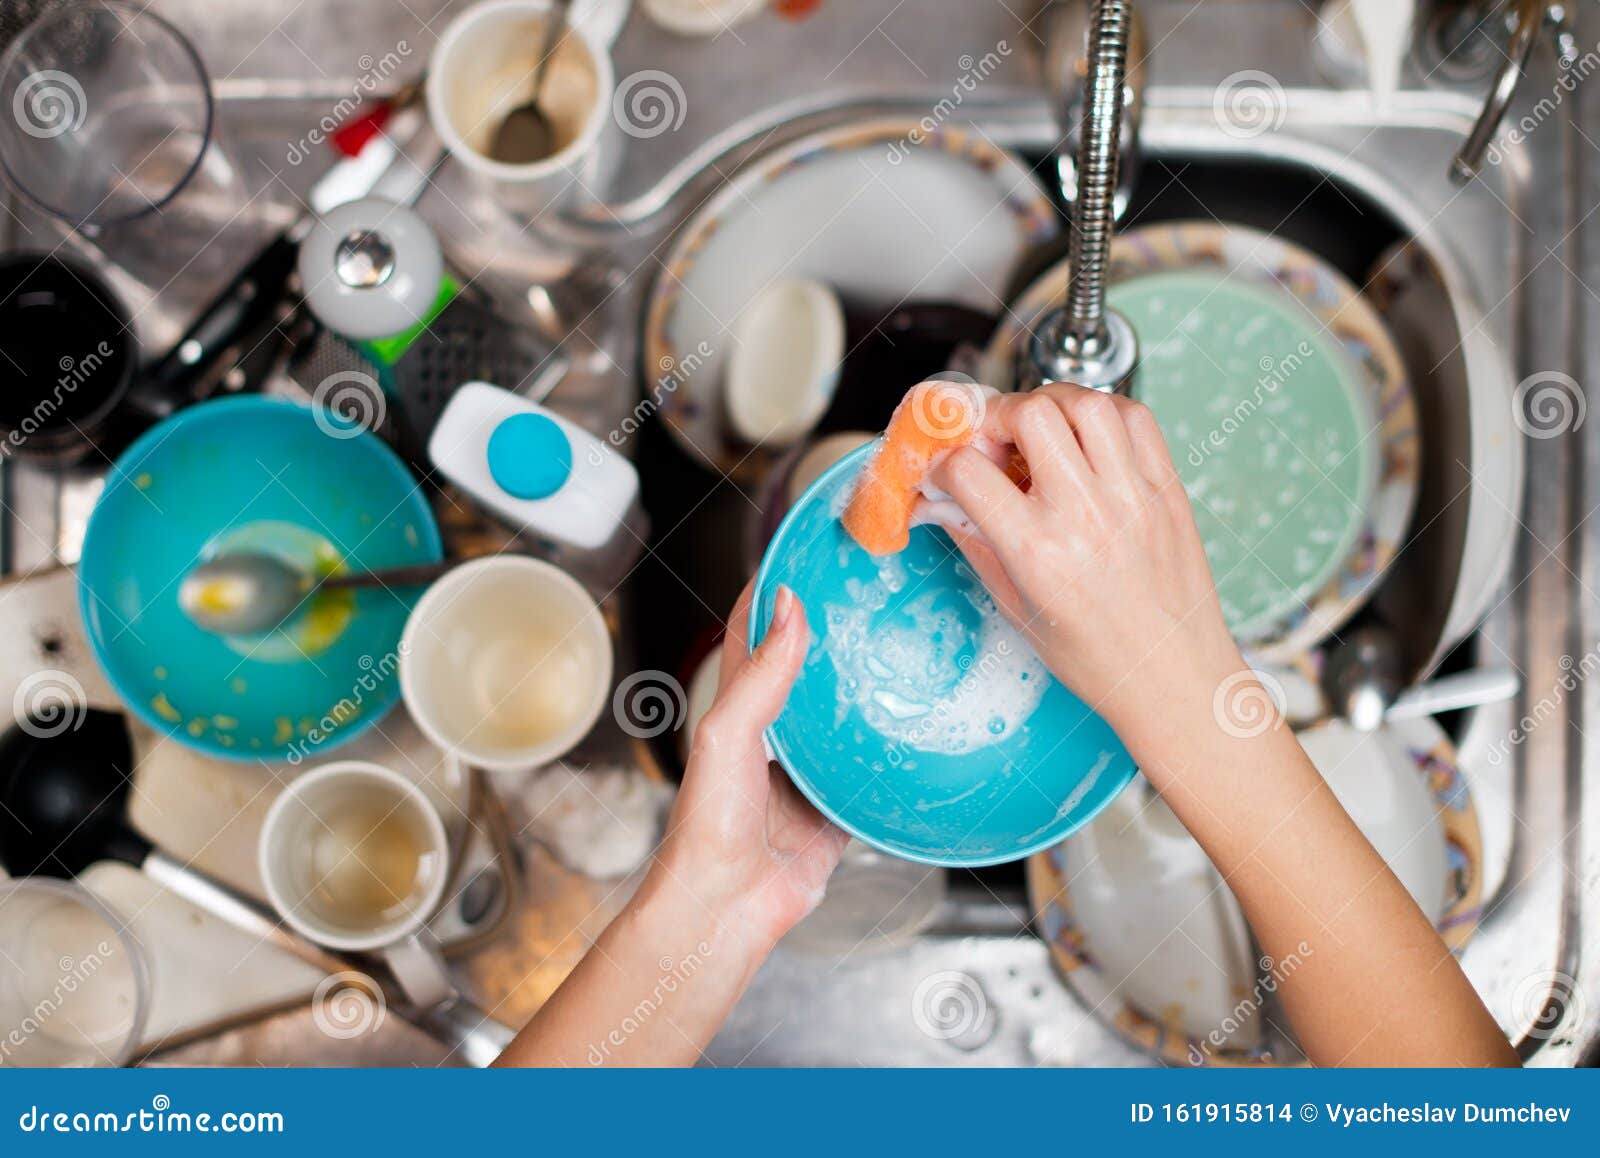 Мыть чужую посуду во сне. Мытье посуды. Грязная посуда. Мытье грязной посуды. Грязная посуда в раковине.